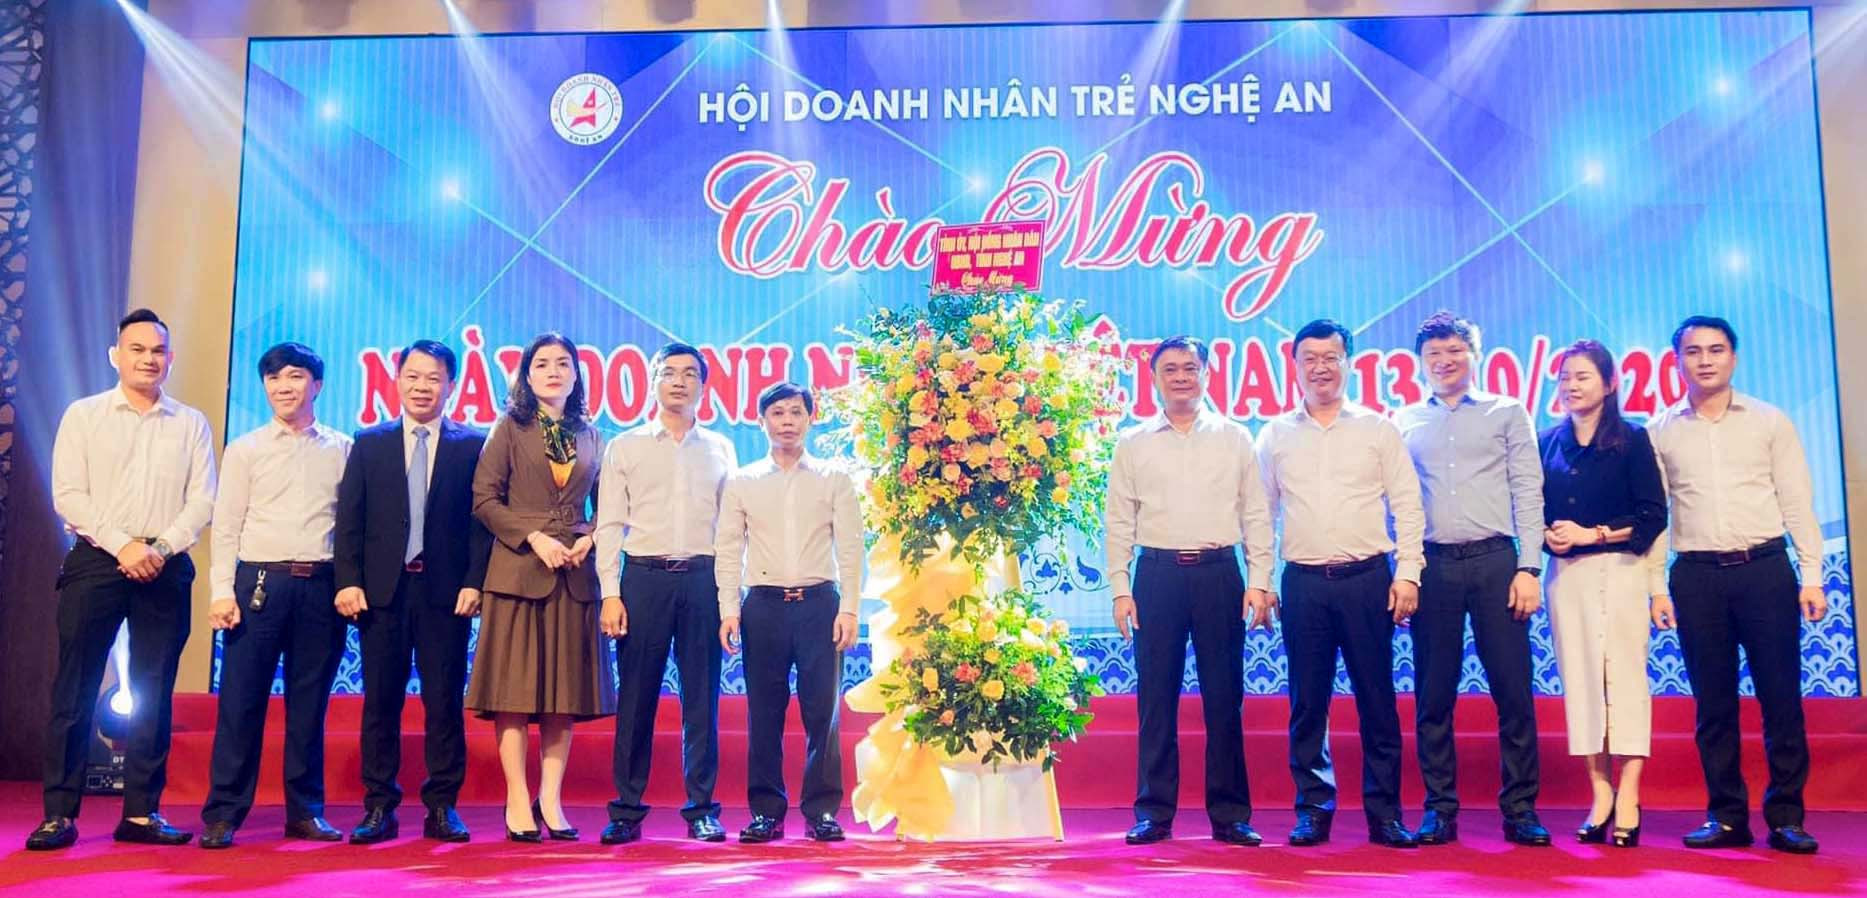 Lãnh đạo tỉnh chúc mừng Hội Doanh nhân trẻ nhân ngày Doanh nhân Việt Nam